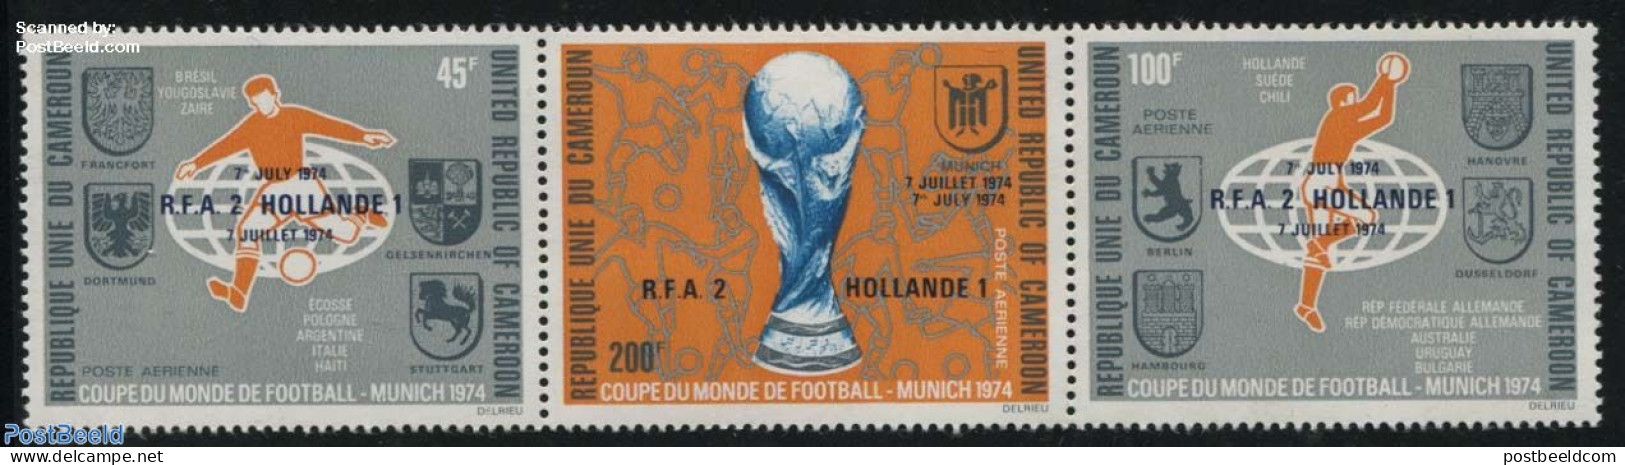 Cameroon 1974 Football Winners 3v [::], Mint NH, History - Sport - Netherlands & Dutch - Football - Aardrijkskunde